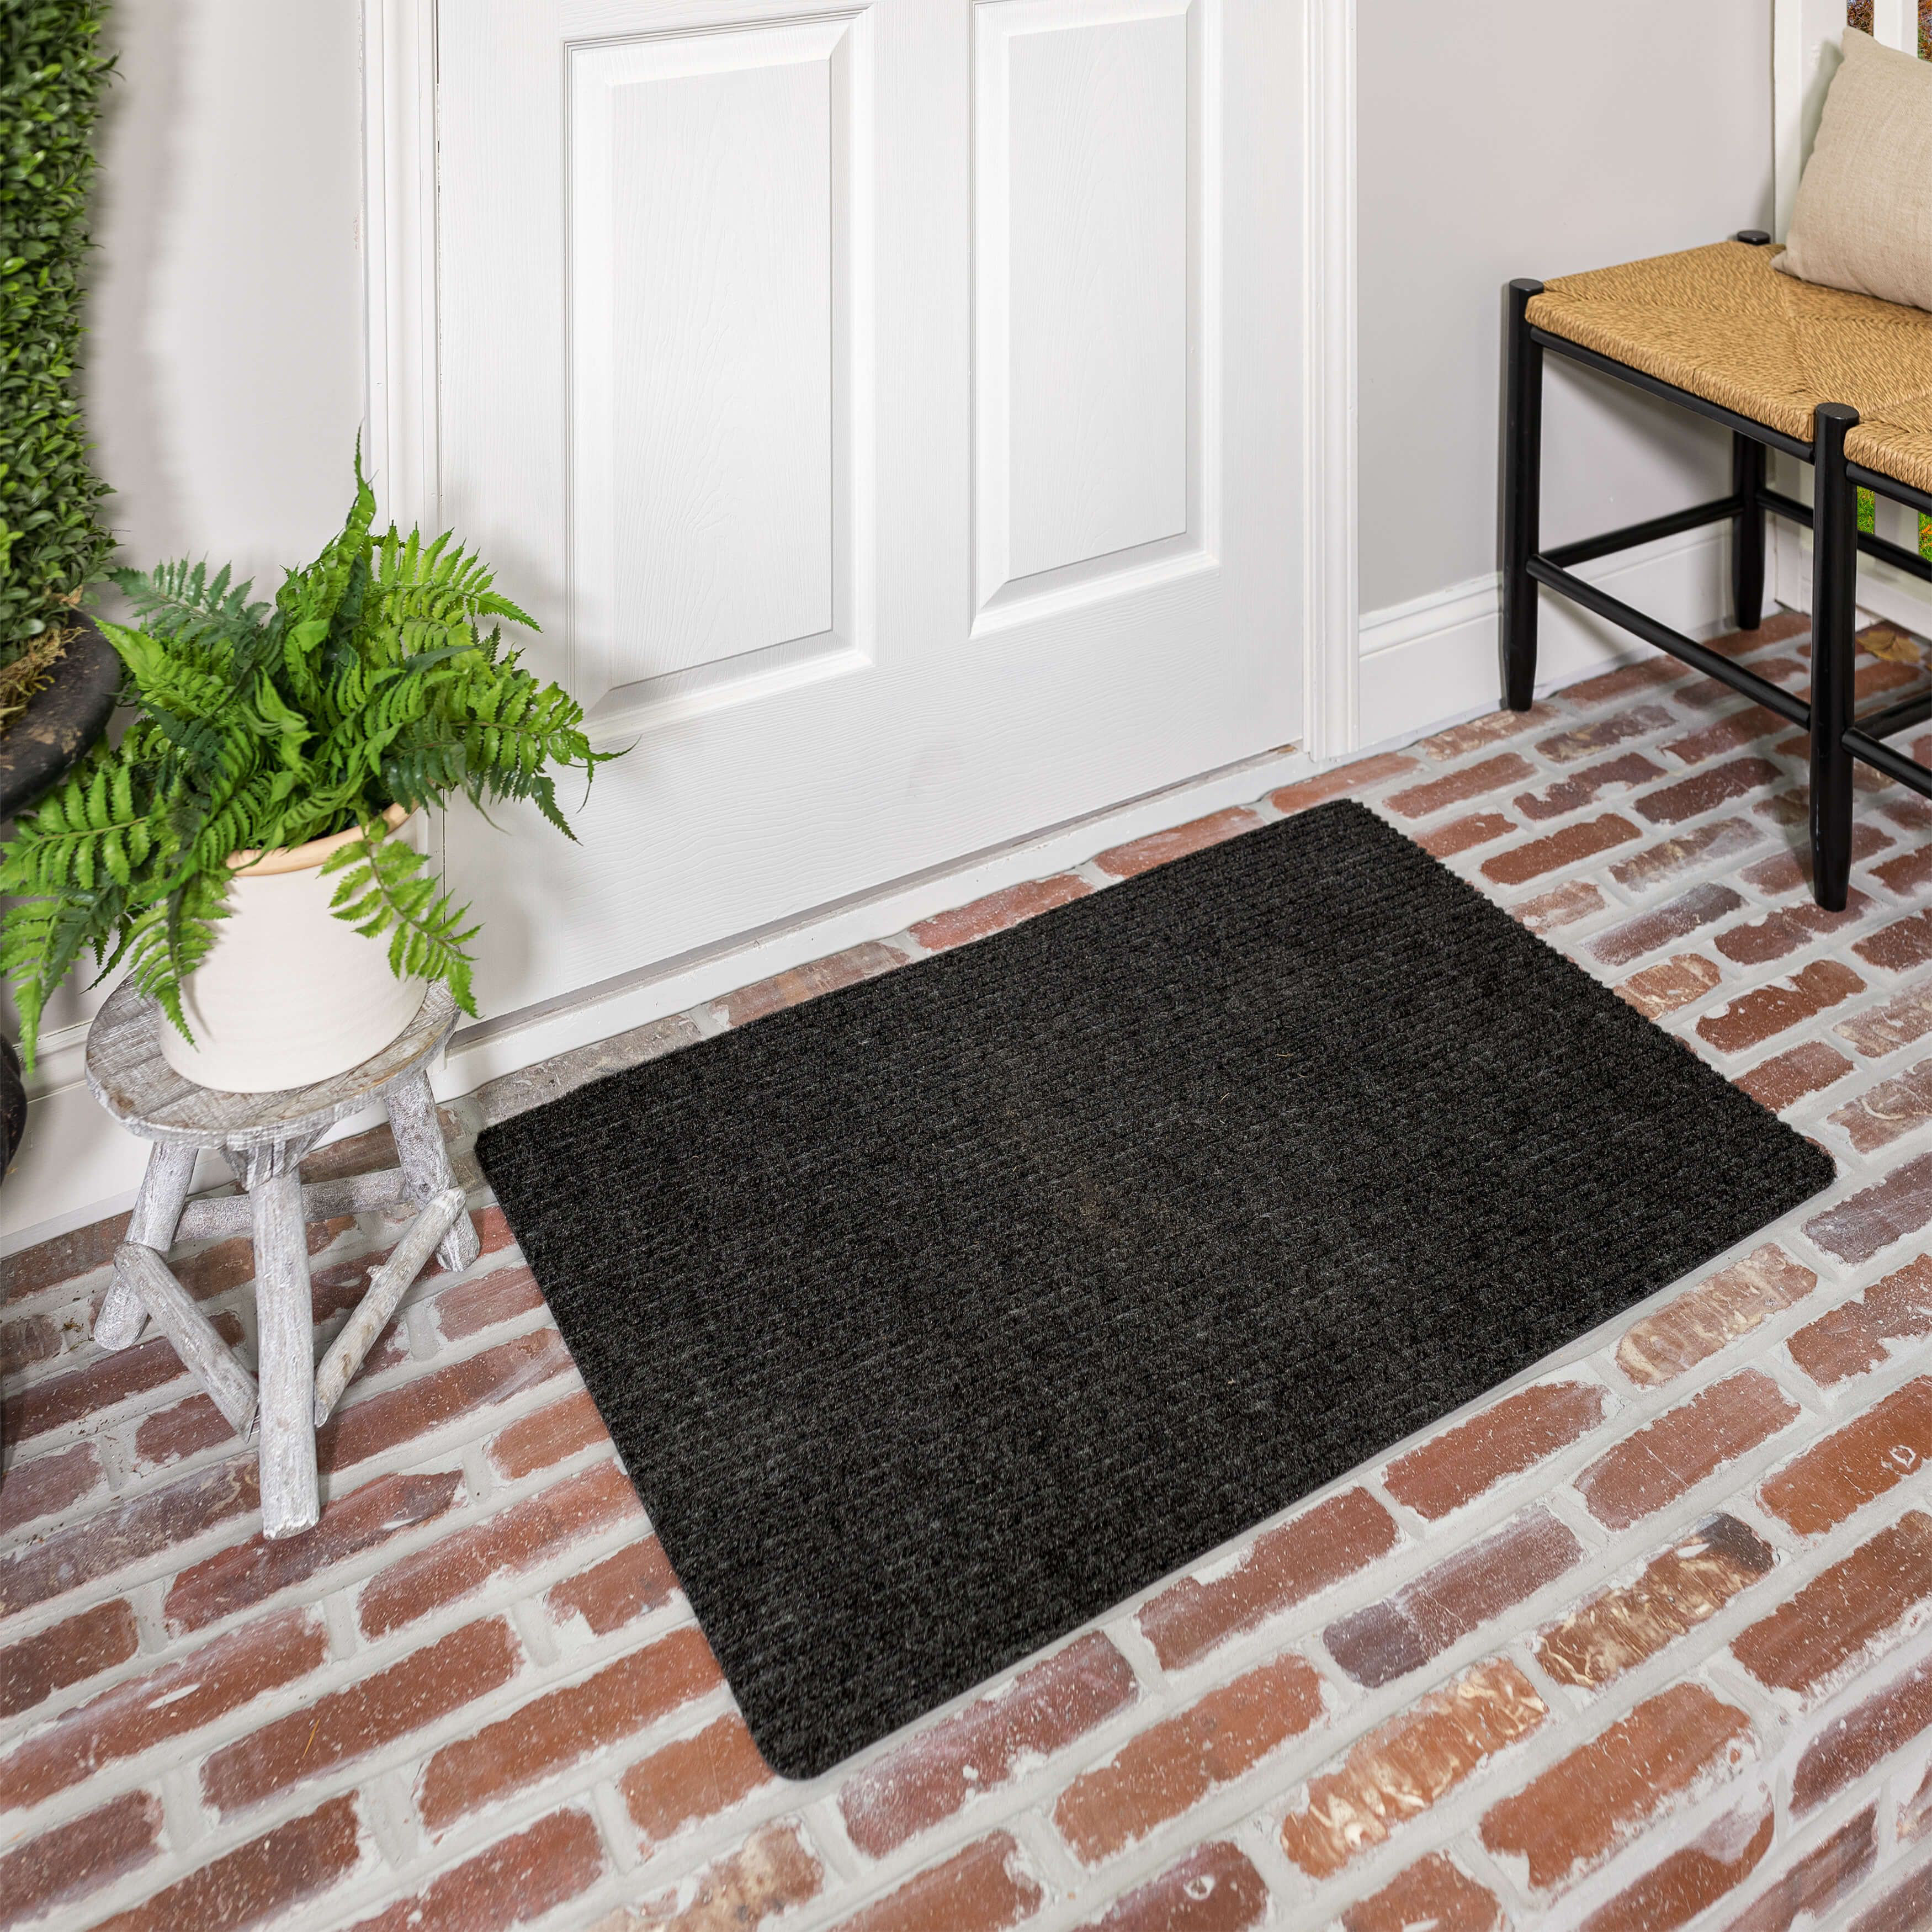 Ottomanson Easy Clean, Waterproof Non-Slip 2x3 Indoor/Outdoor Rubber Doormat,  20 x 39, Black 